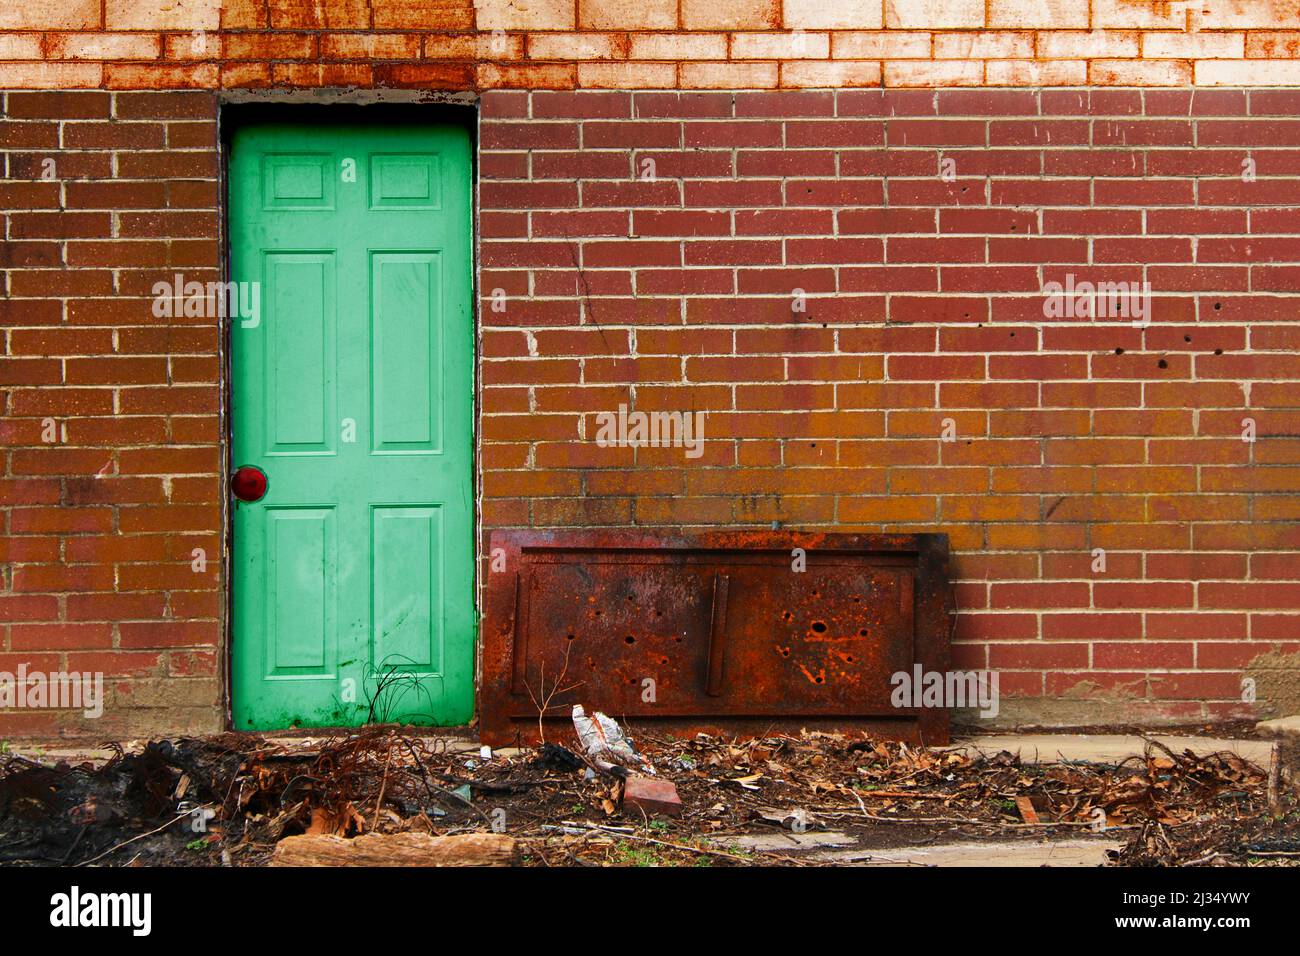 Eine grüne alte Vintage-Tür Stahl roten Backstein Gasse Wand rostigen Schutt Lagerhaus Fabrik Versand Eingang Hintertür Mitarbeiter Eingang Stockfoto